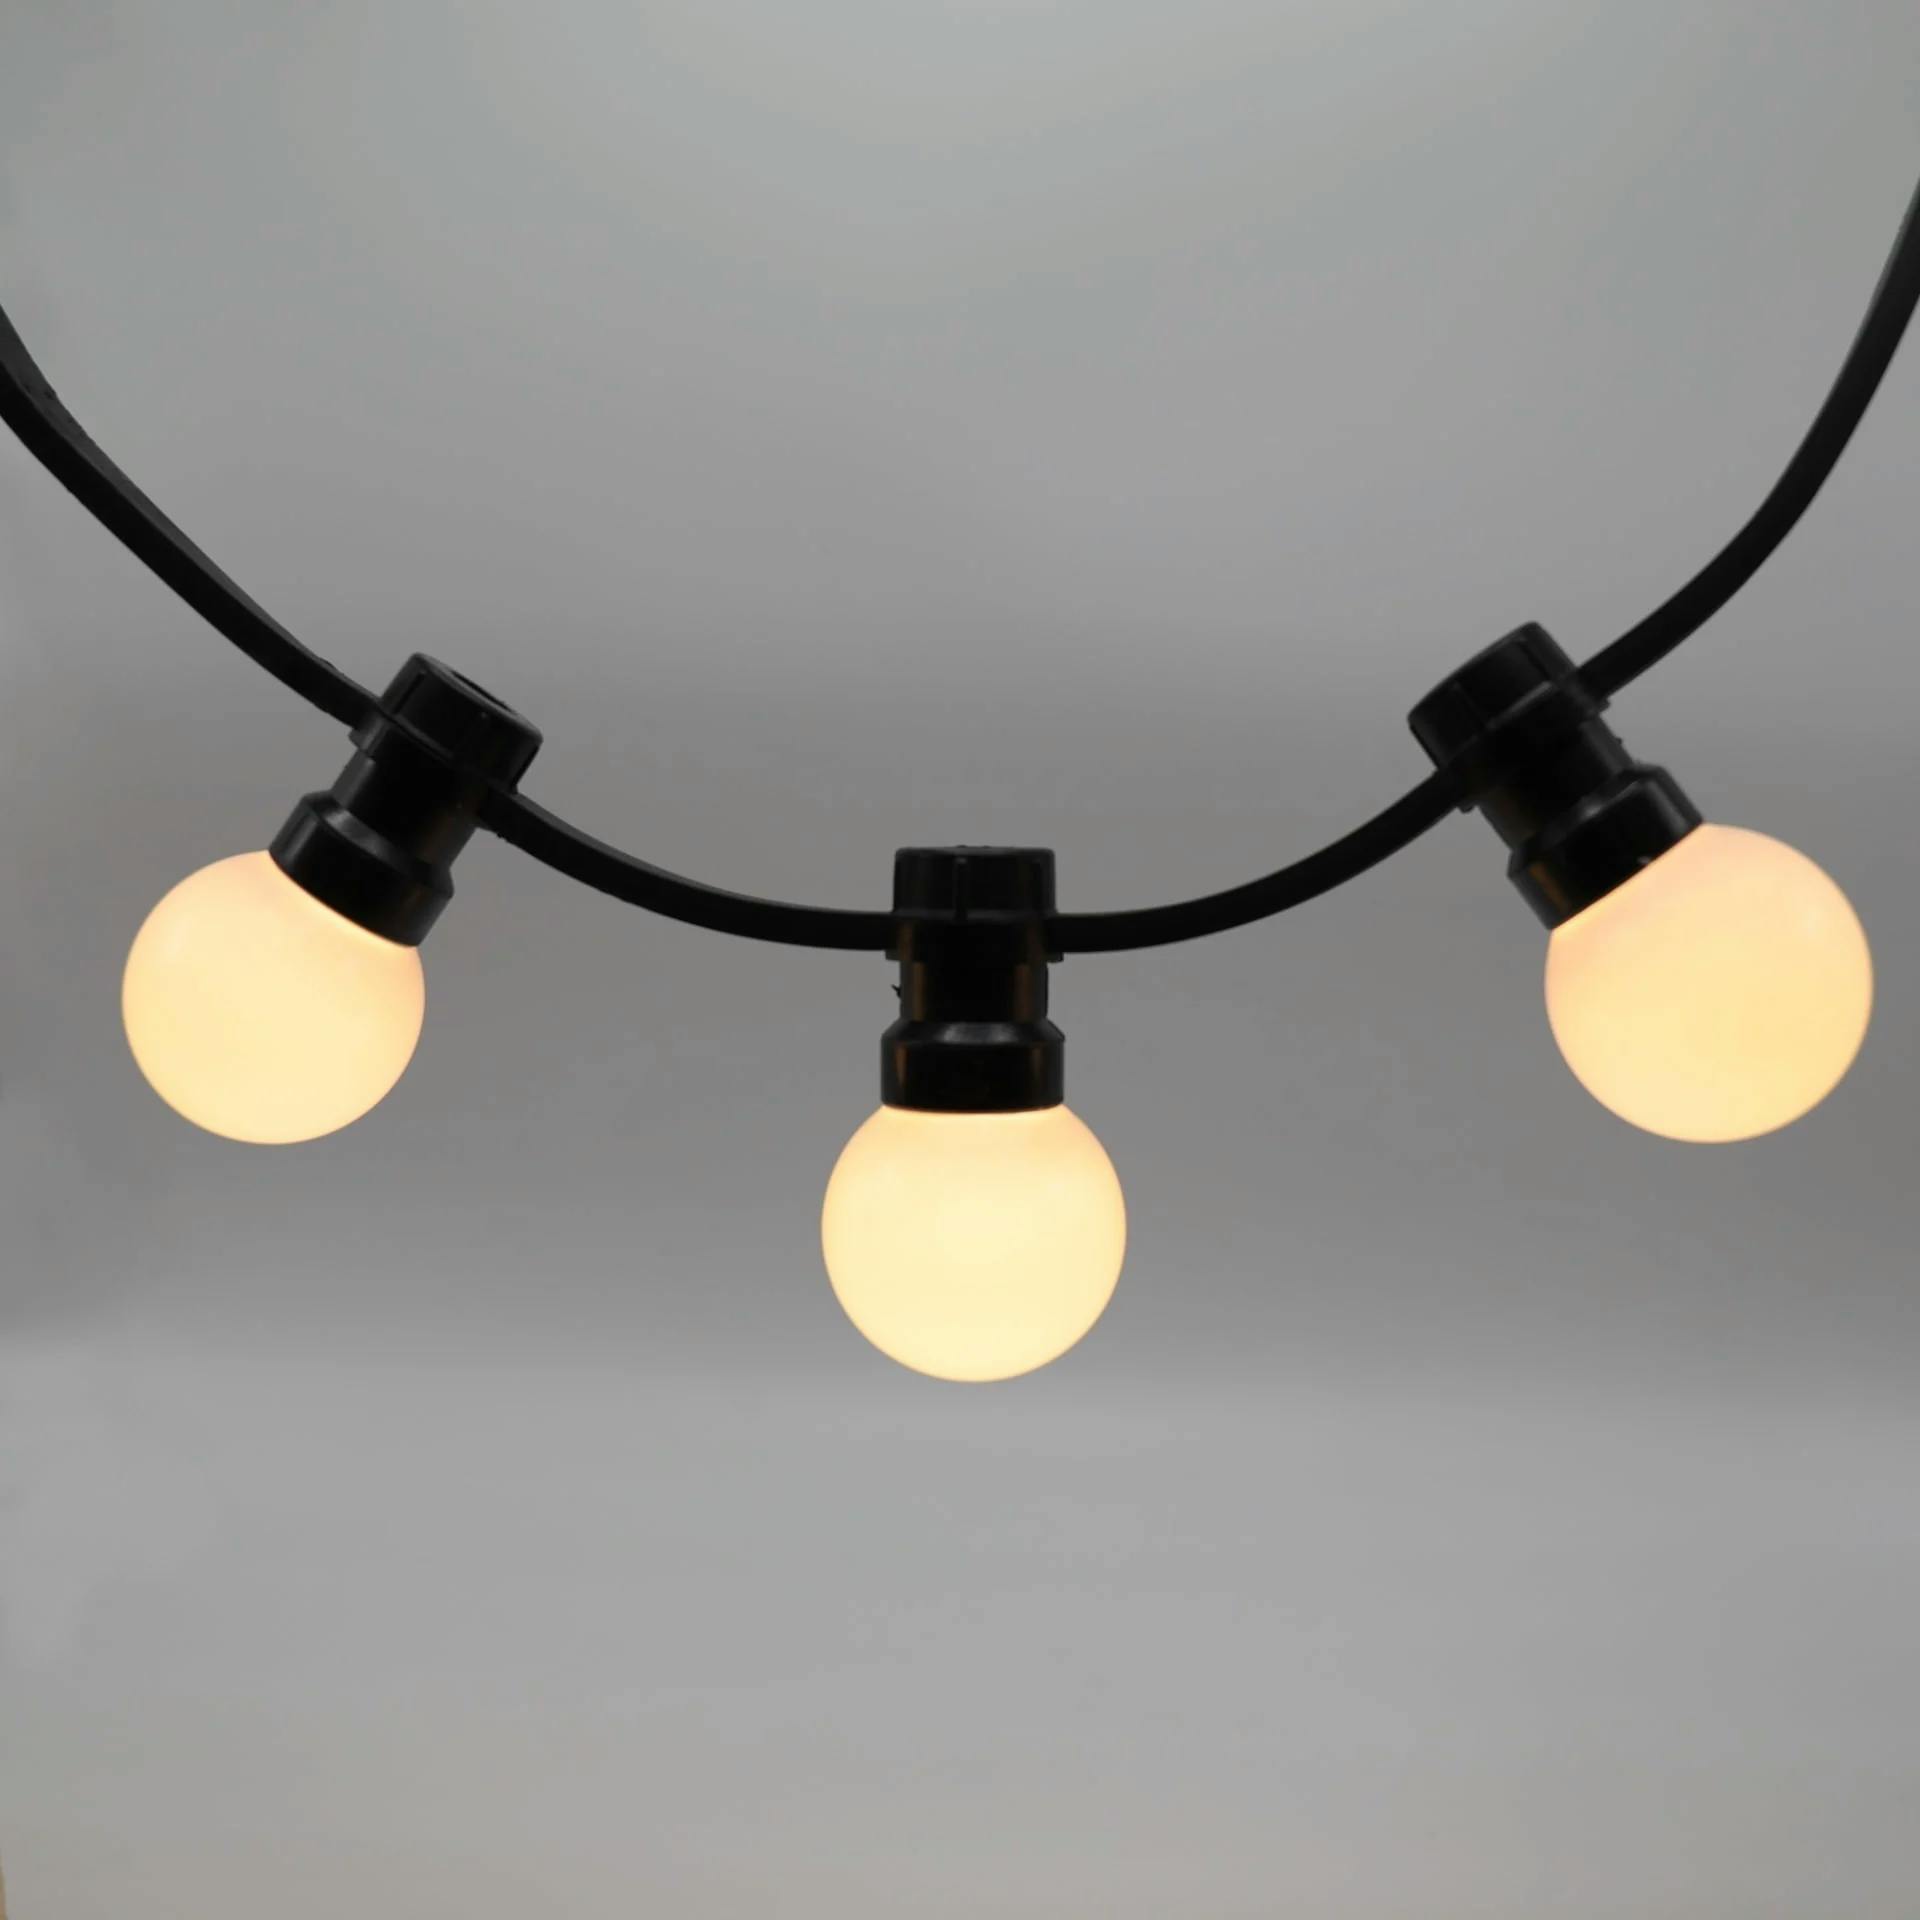 Lichterkette für den Außenbereich mit festen Lampen - milchiges Weiß  - 10m oder 25m - verlängerbar